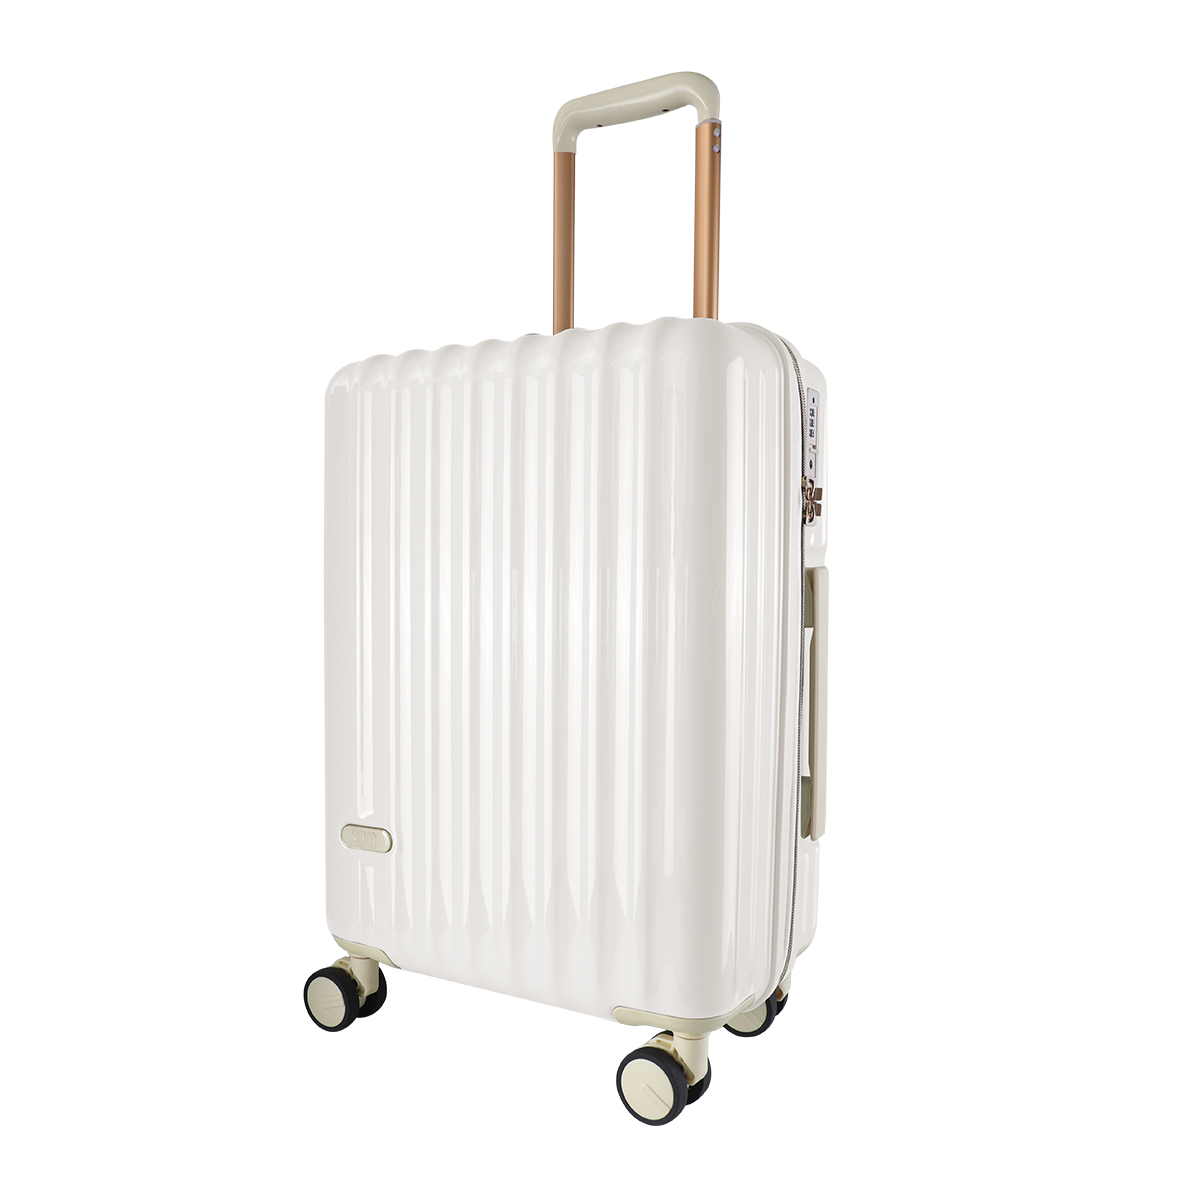 スーツケース 機内持ち込み Sサイズ 軽量 小型 キャリーケース キャリーバッグ 39L 2泊3日 TSAロック おしゃれ かわいい 旅行かばん 旅行  旅行用品 WEIMALL